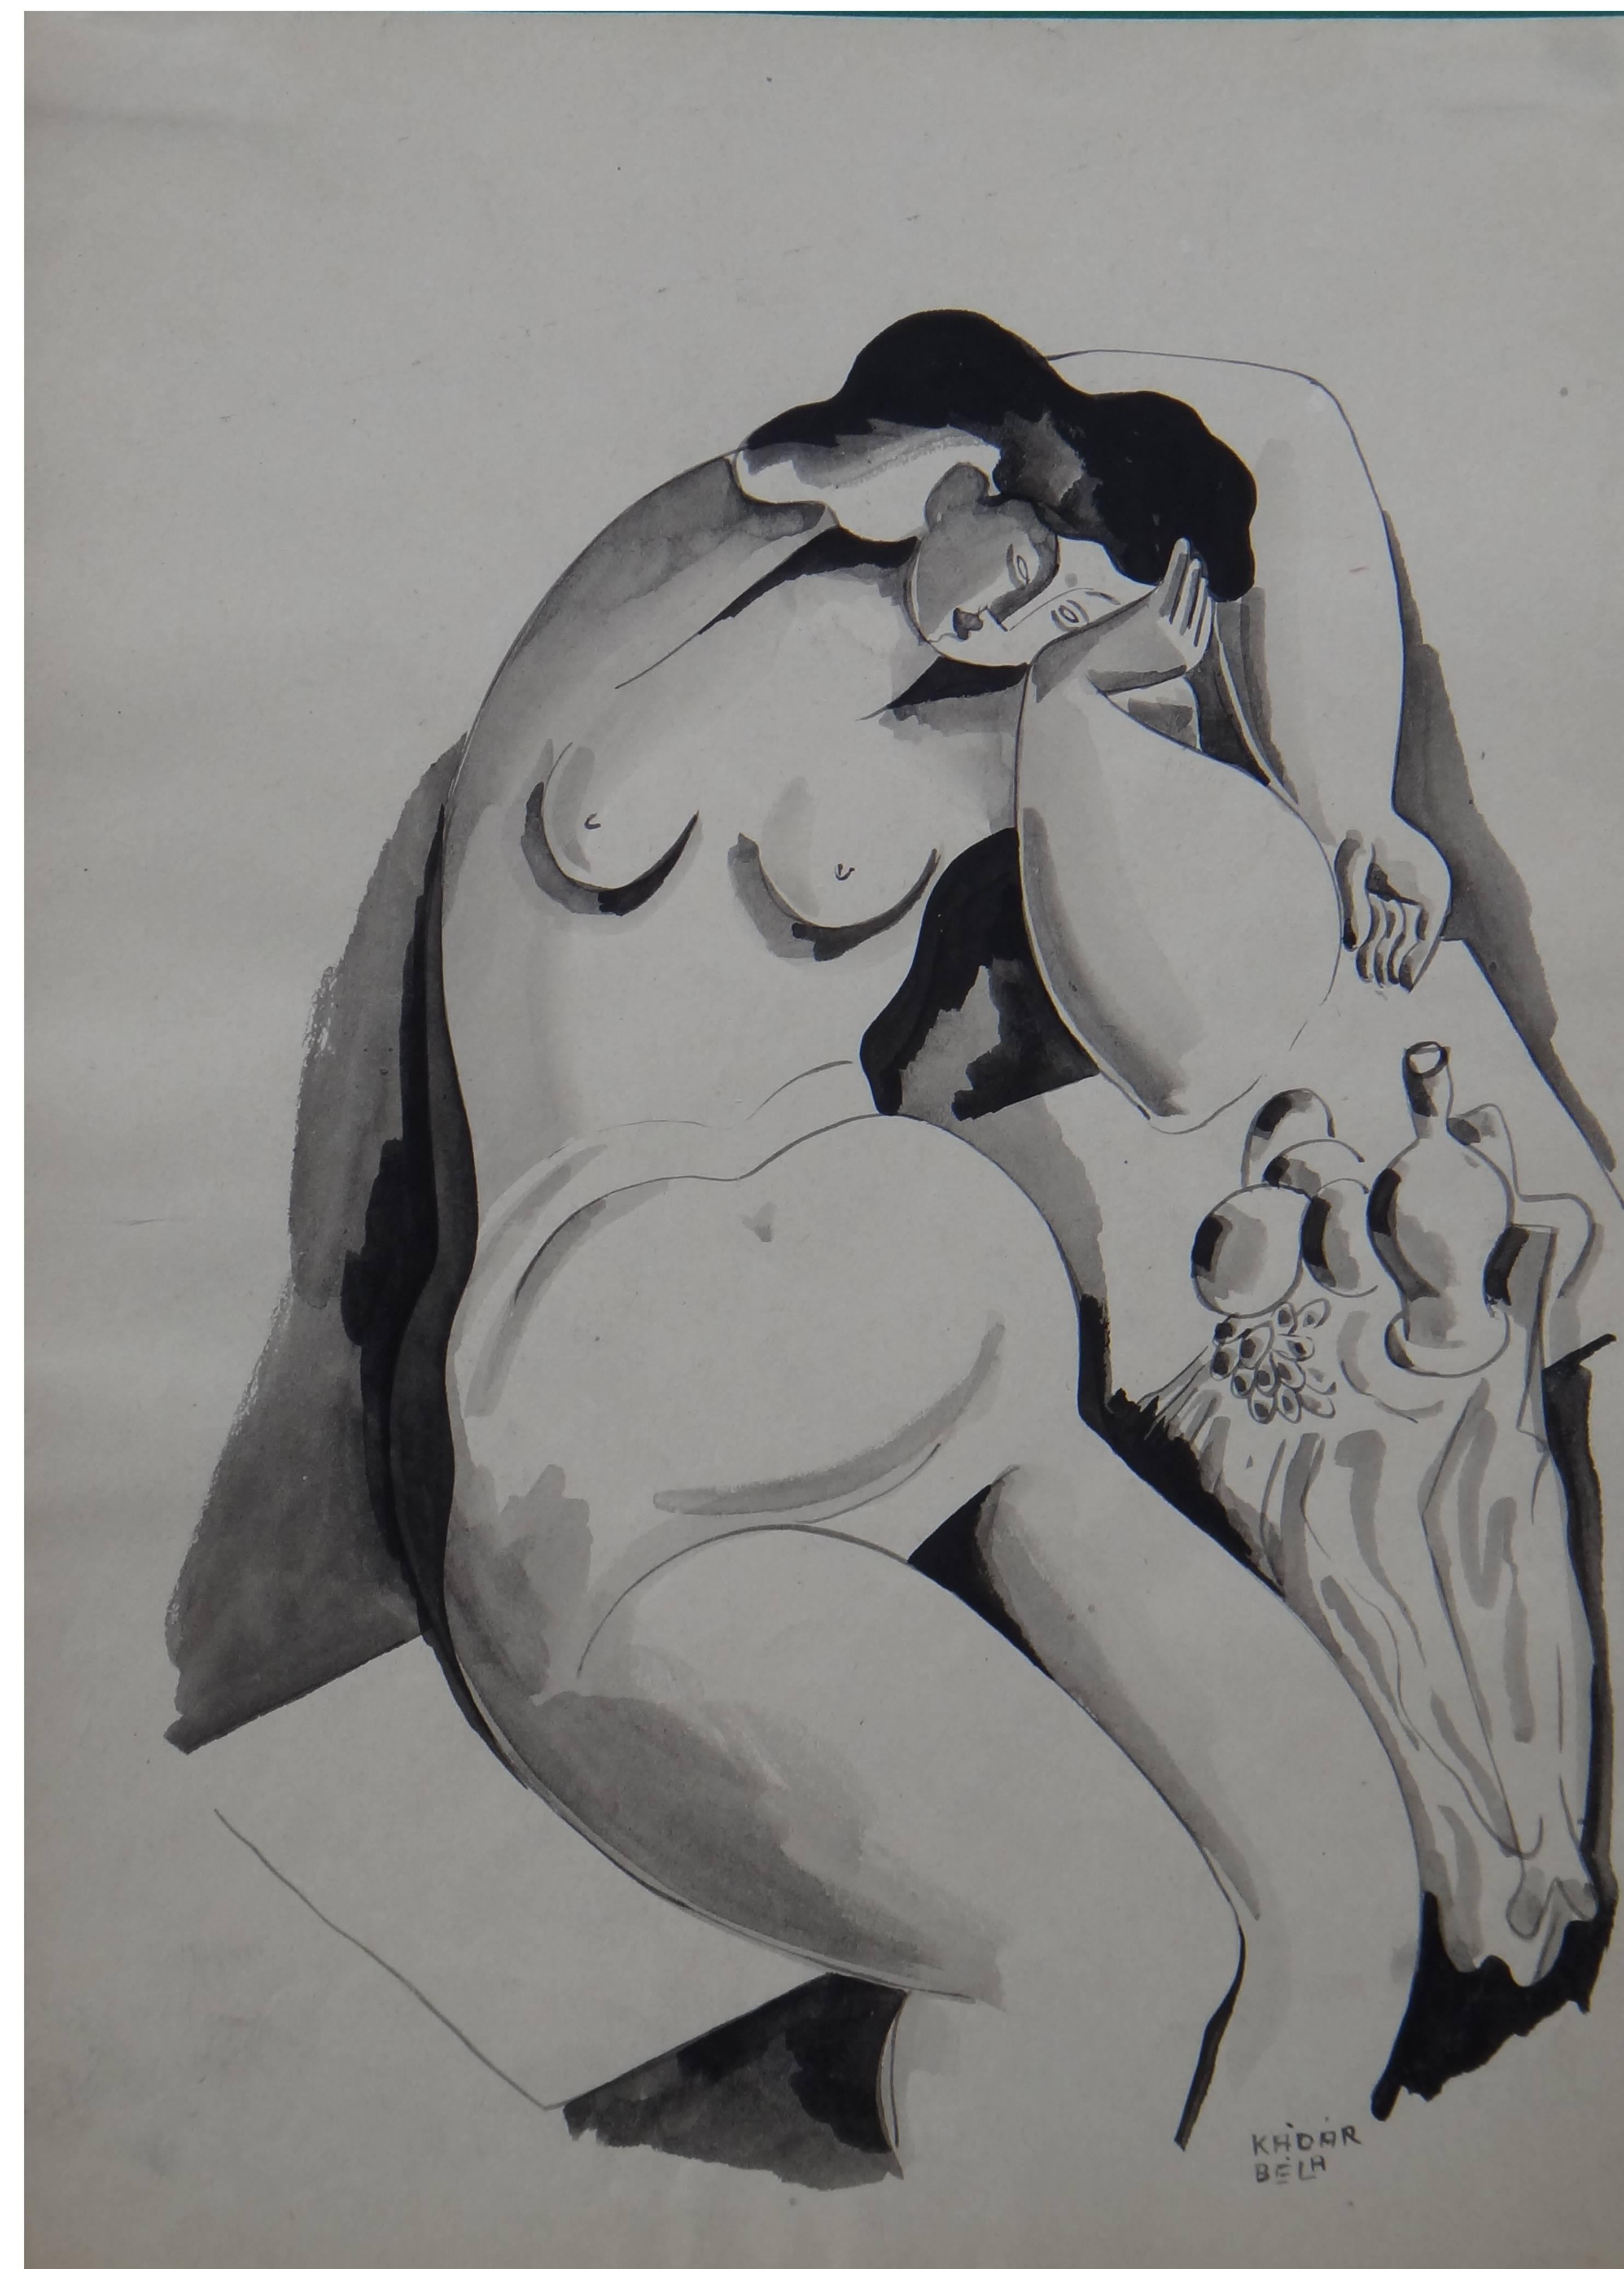 Béla Kádár "Weiblicher Akt" ( Female Nudes ), Ink on Paper 1920's - Art by Bela Kadar